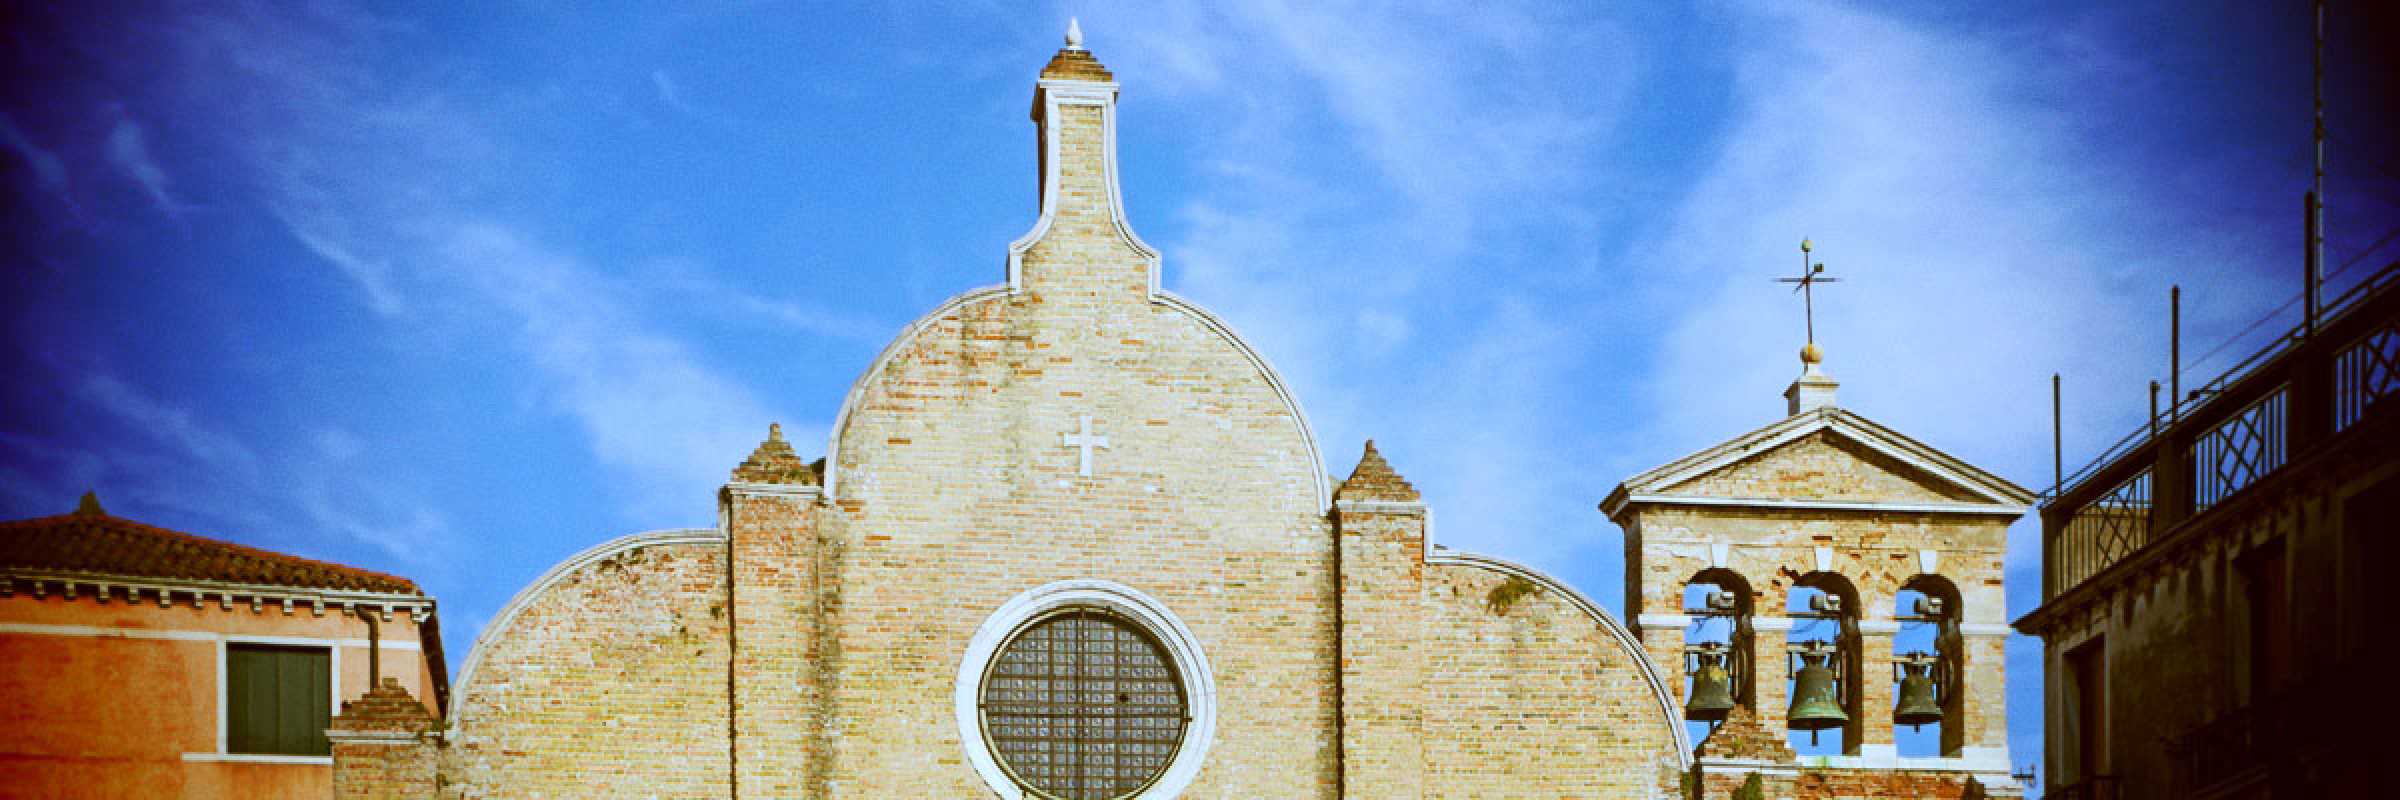 La parte alta della facciata della Chiesa di San Giovanni in Bragora.